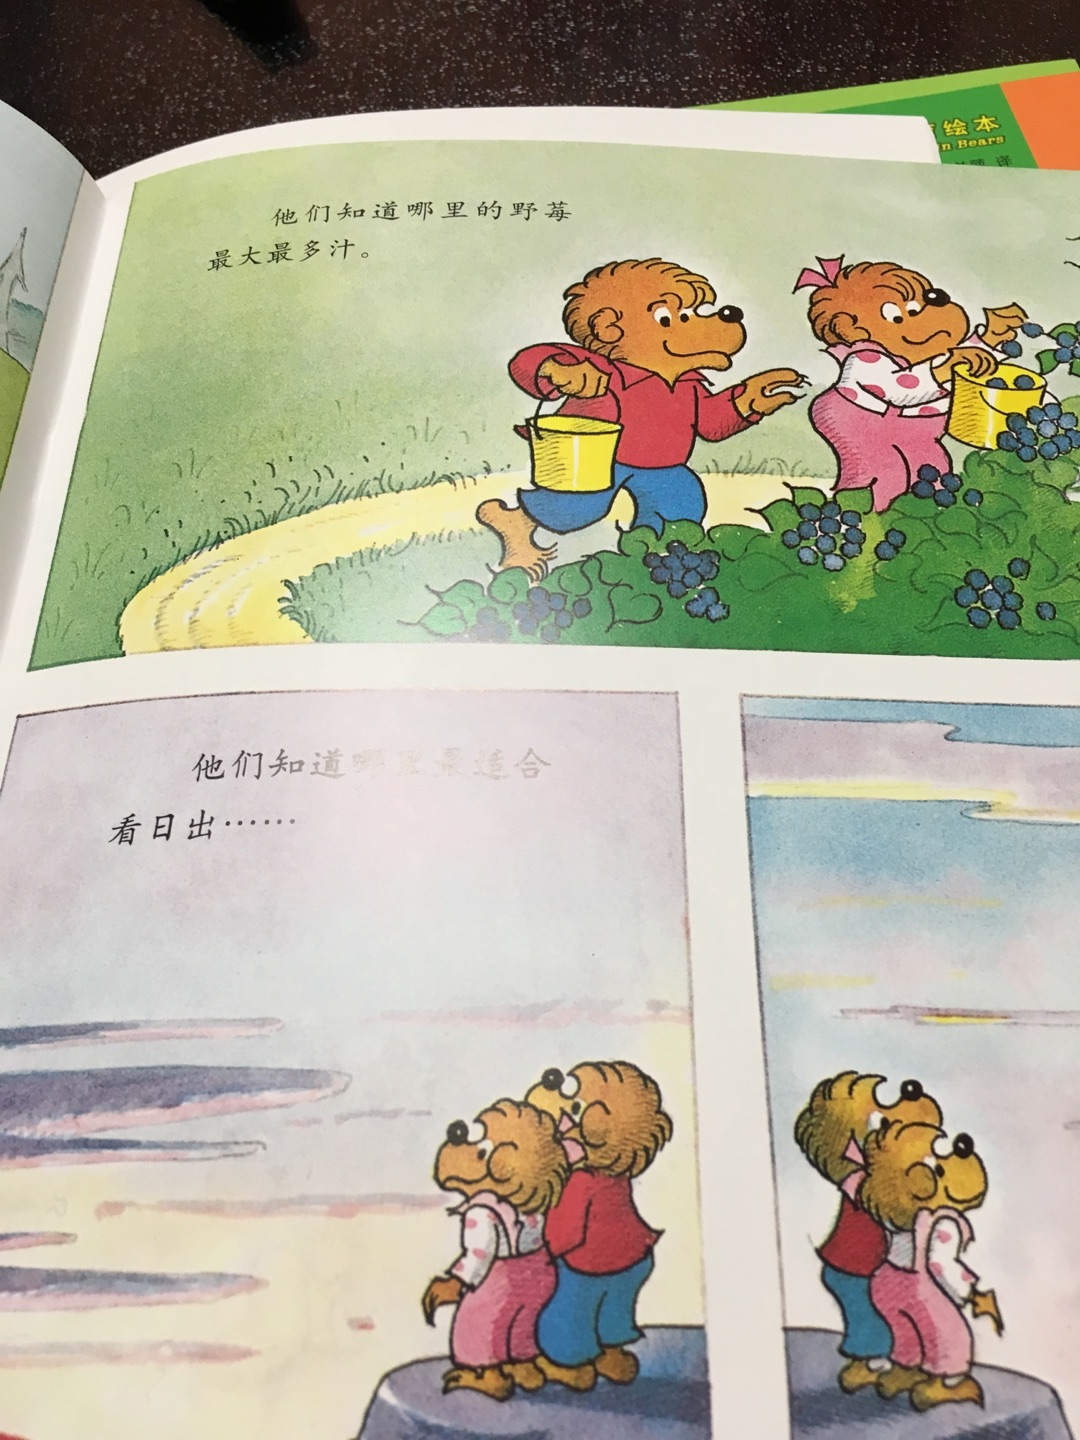 这套的图画和以前的贝贝熊系列的是一样的，孩子很喜欢贝贝熊系列丛书